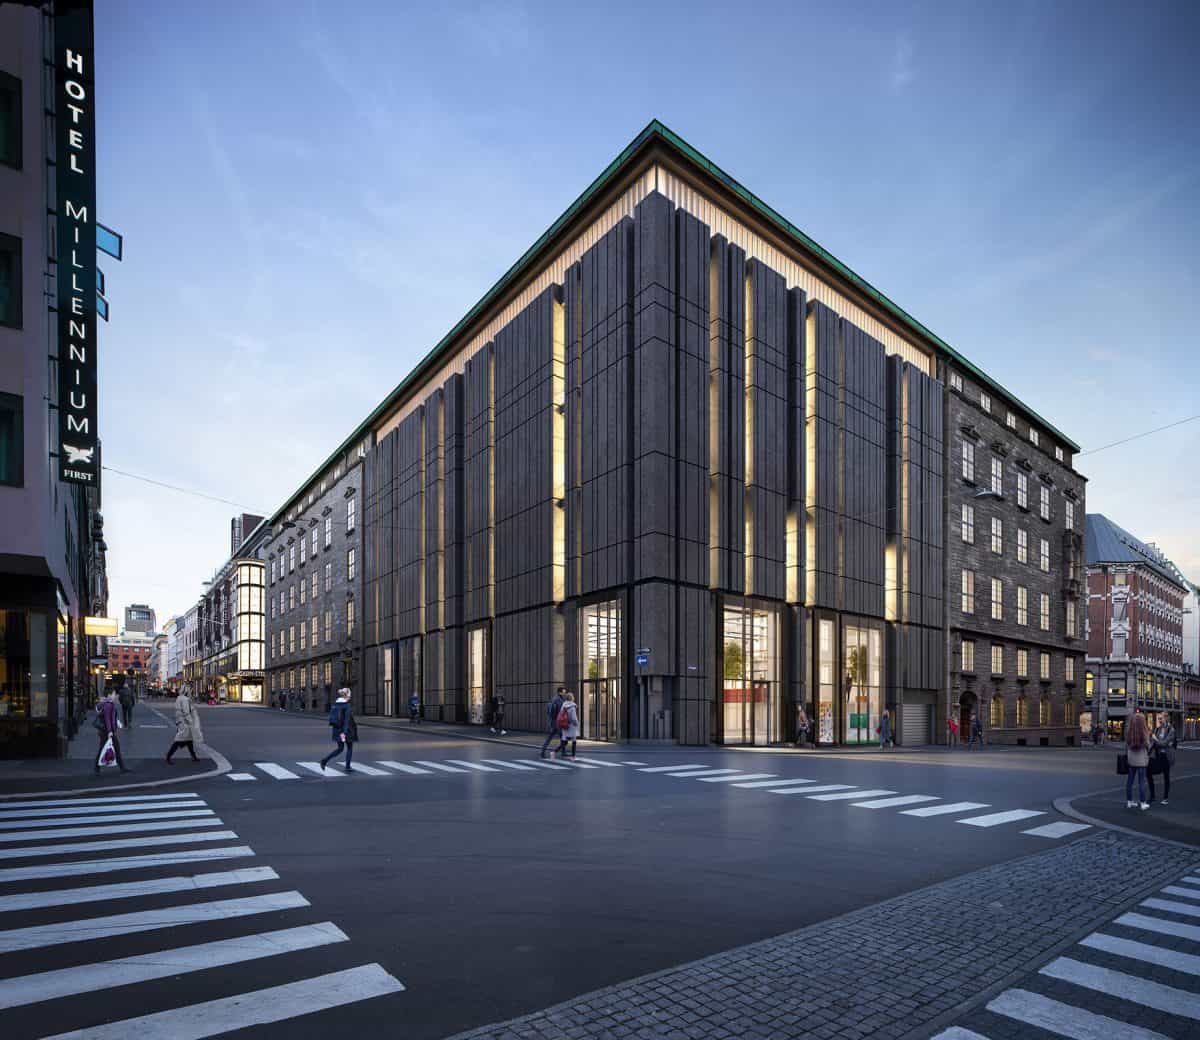 Telegrafen vil bli blant Norges flotteste kontorlokaler når bygget står ferdig i 2020